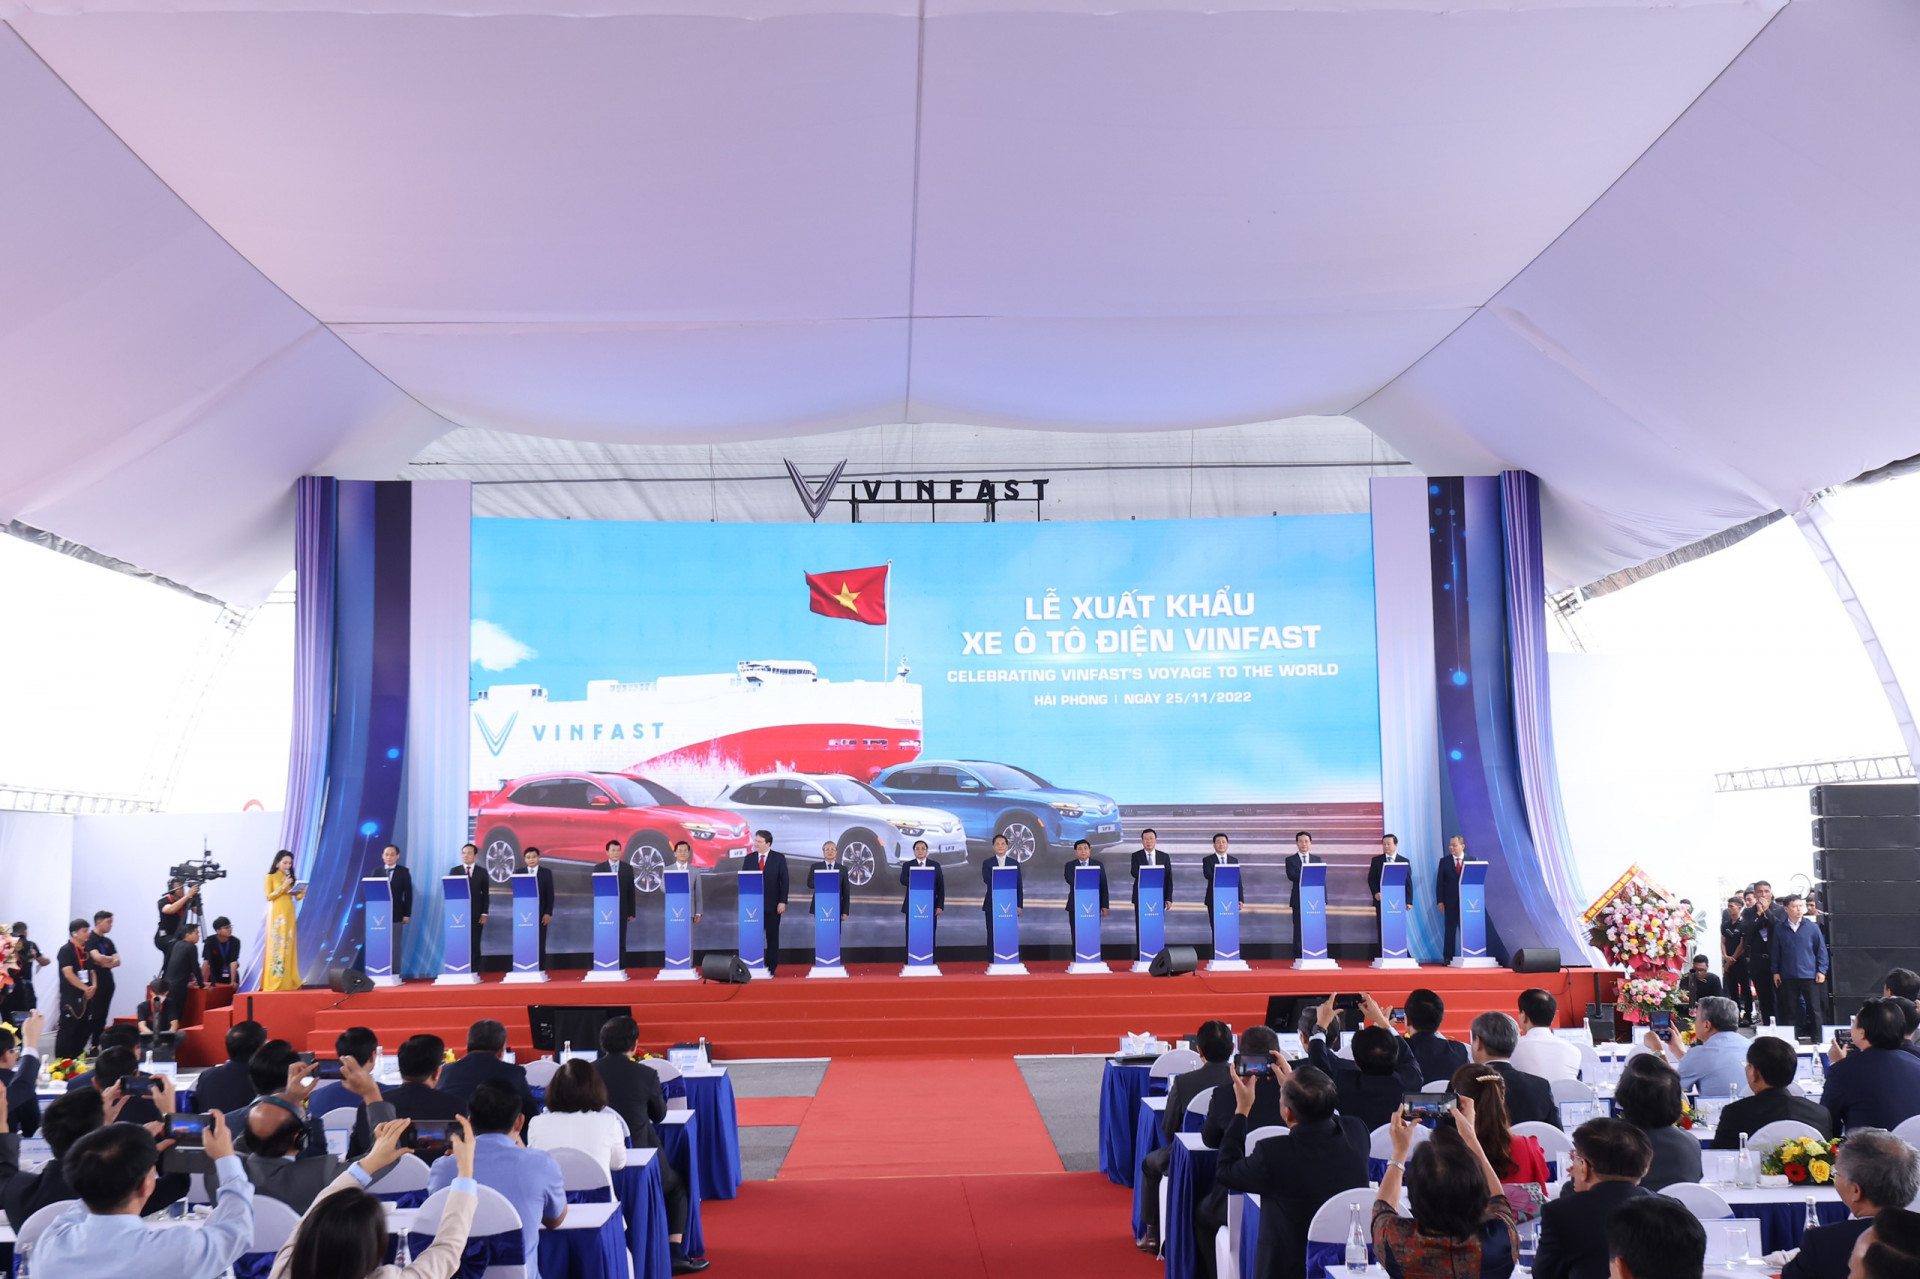  Các đại biểu thực hiện nghi thức bấm nút phát lệnh xuất khẩu xe ô tô điện VinFast sáng ngày 25/11/2022.